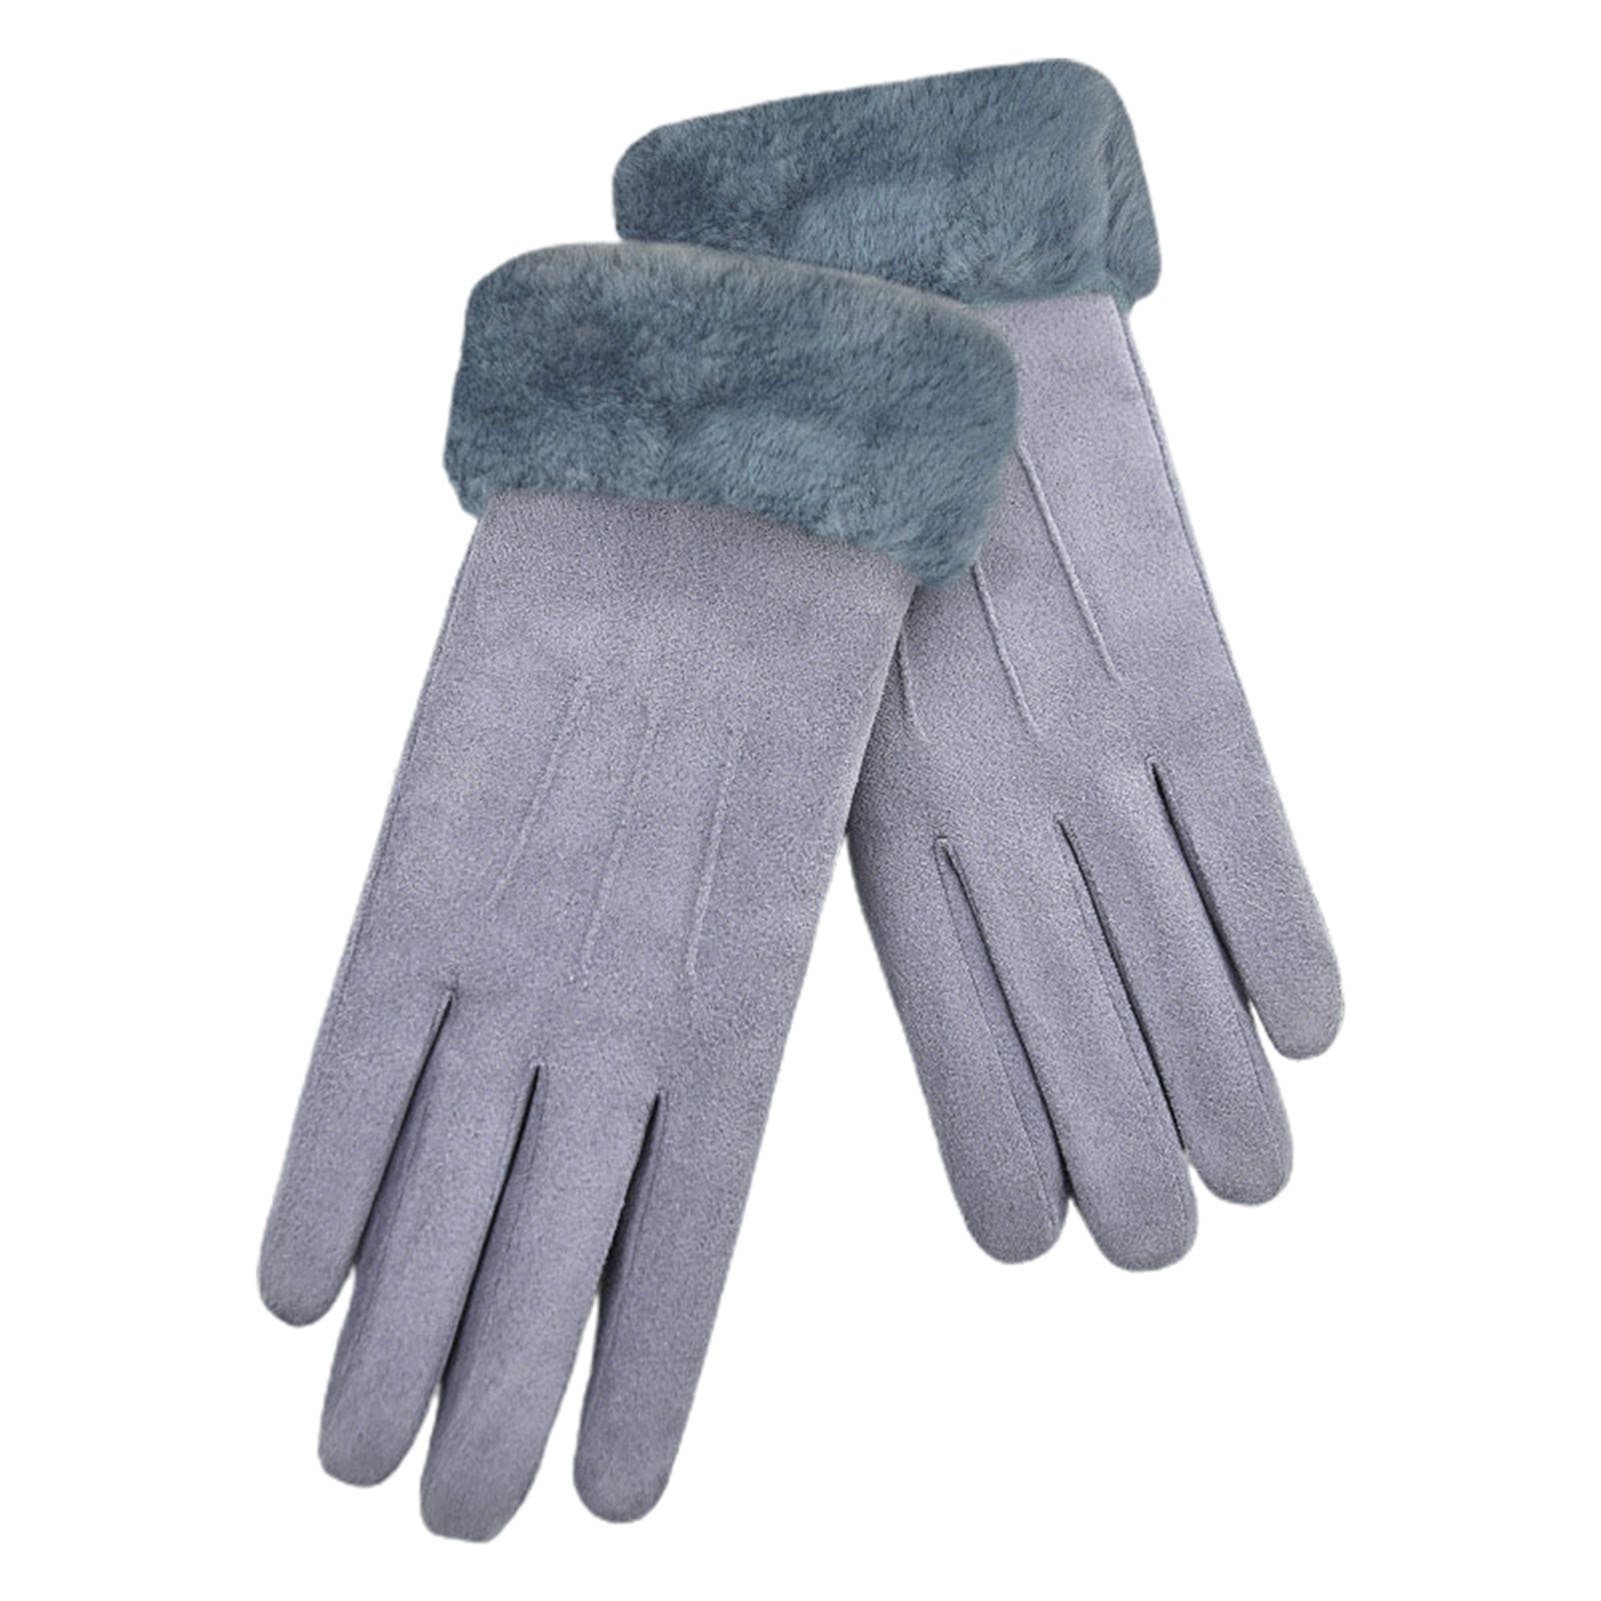 Blusmart Fleecehandschuhe Damen-Winter-Fleece-Handschuhe, Elastischer Wildlederstoff grau